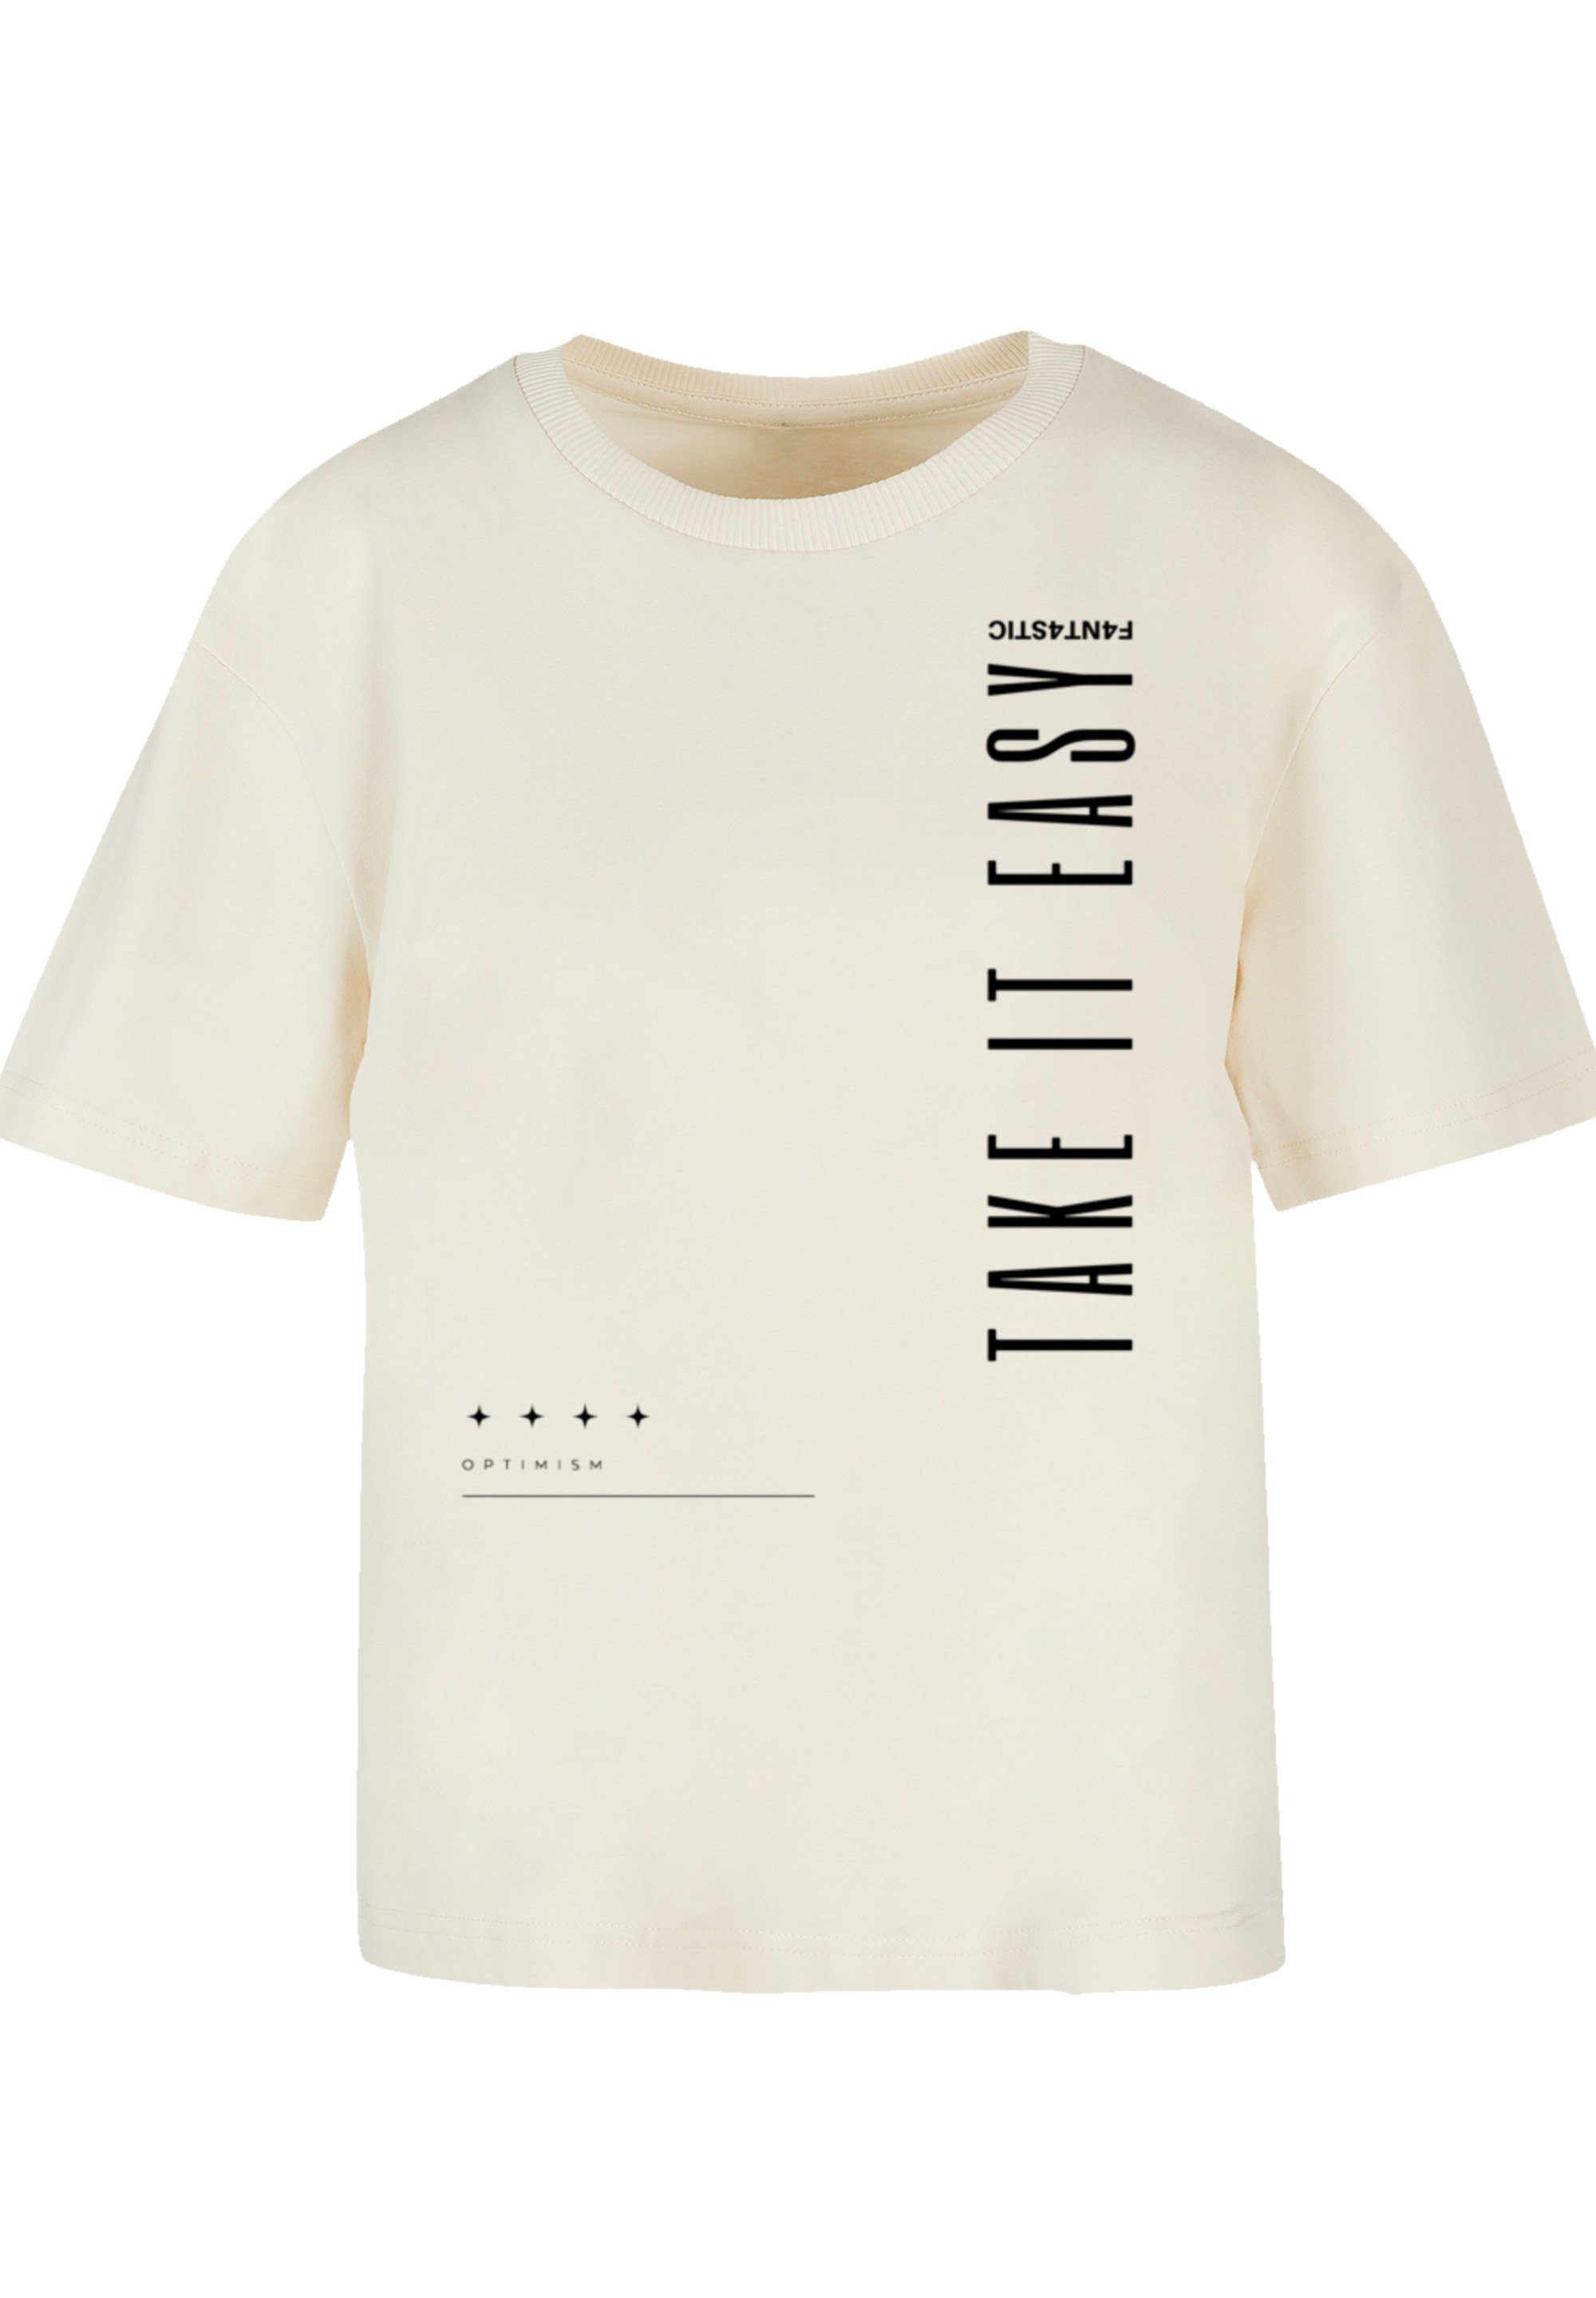 F4NT4STIC T-Shirt Take It Easy Print, Gerippter Rundhalsausschnitt für  stylischen Look